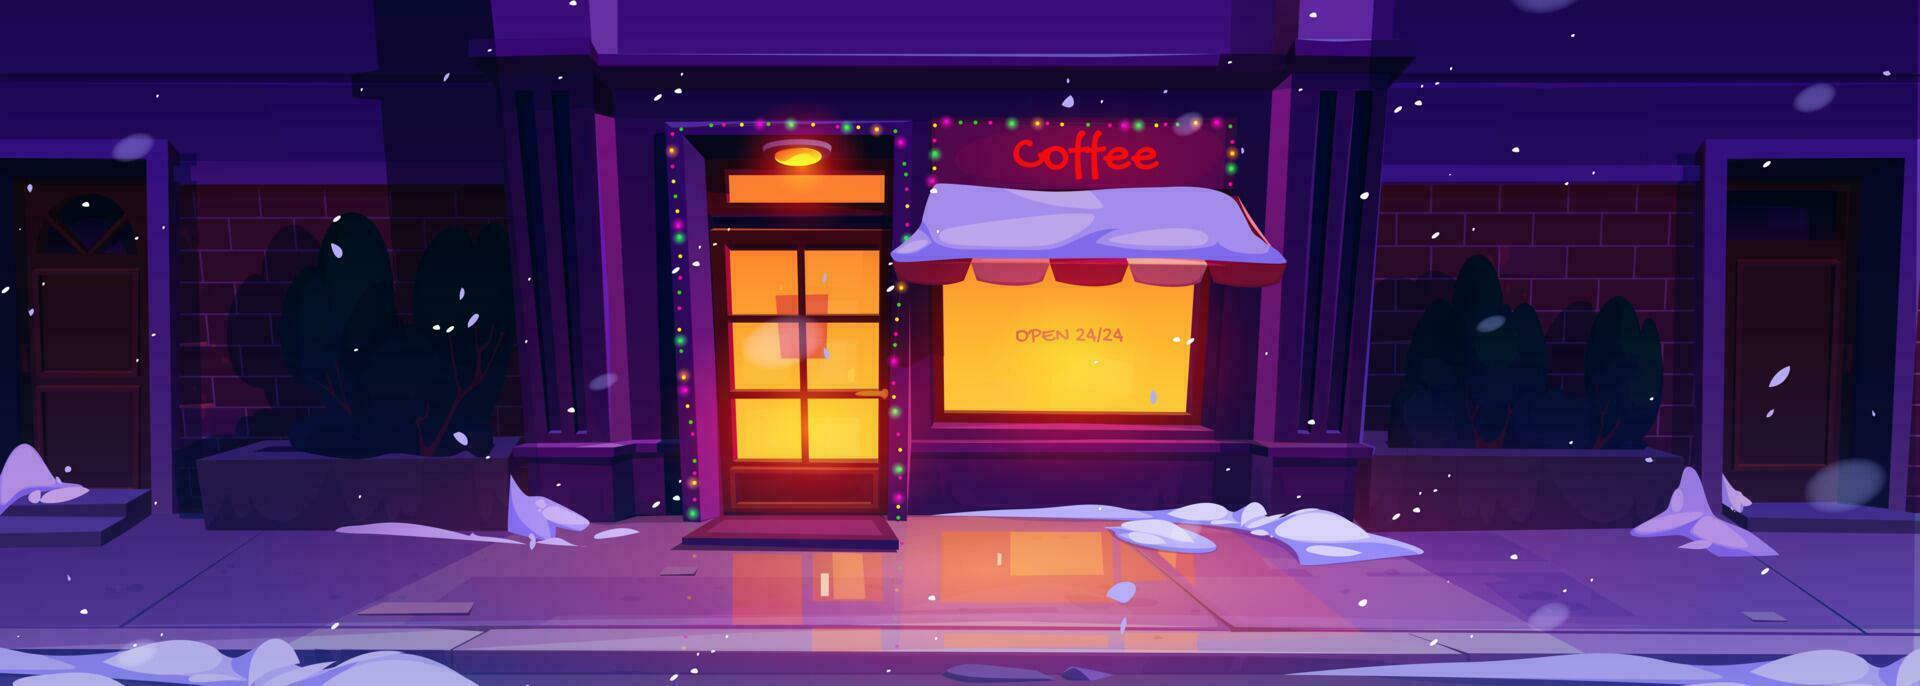 tekenfilm cafe buitenkant met Kerstmis decoratie vector